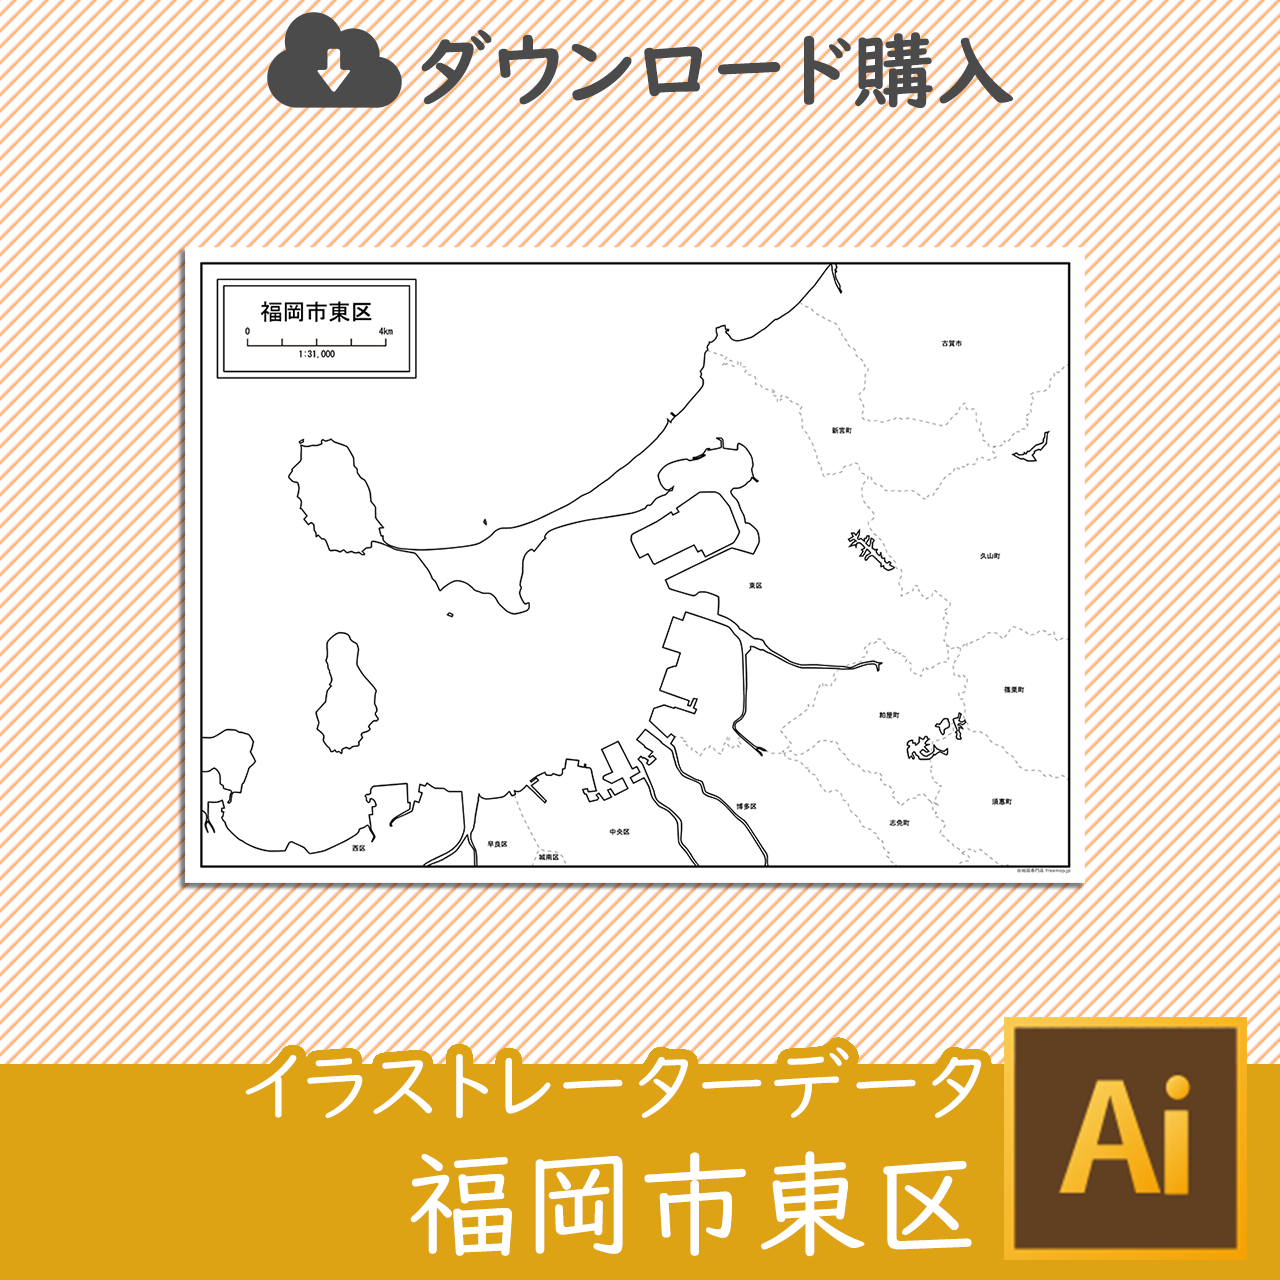 福岡市東区のaiデータのサムネイル画像